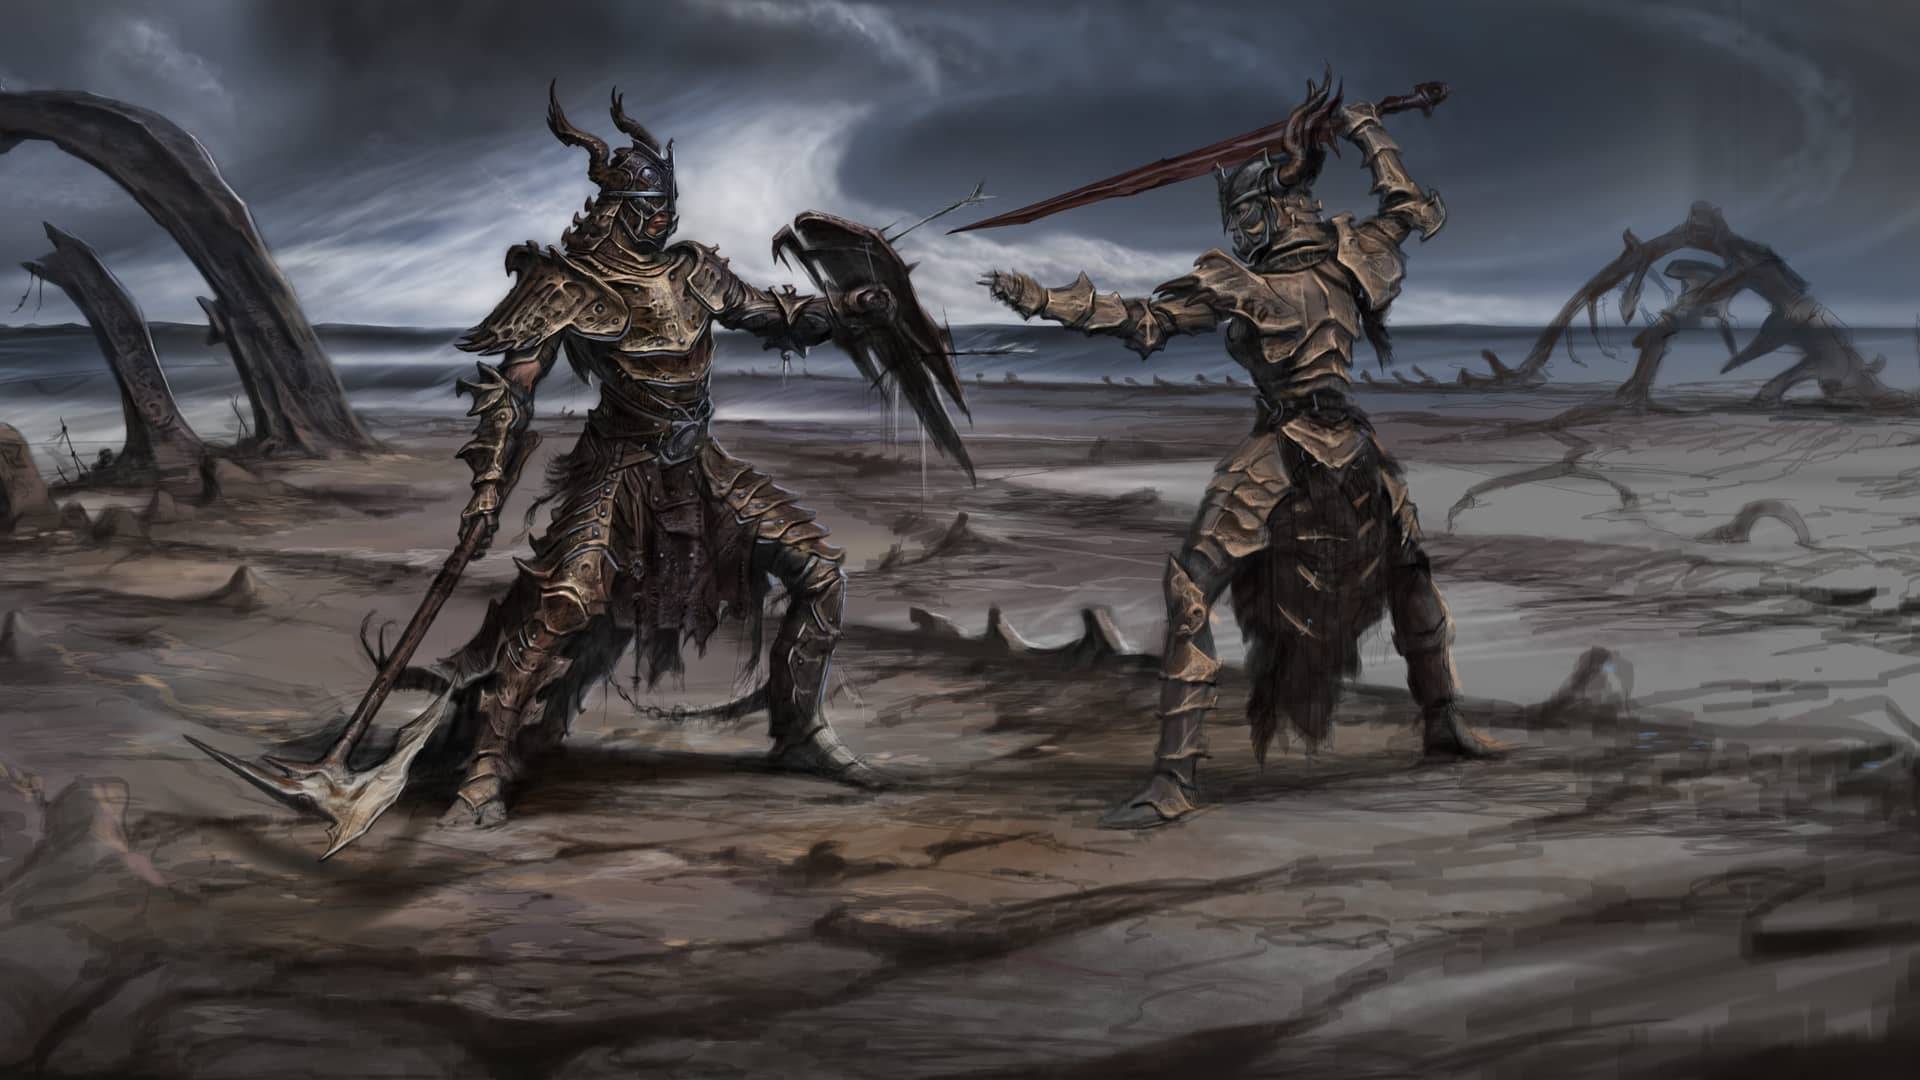 artwork del juego The Elder Scrolls V: Skyrim que es uno de los mejores juegos de rol